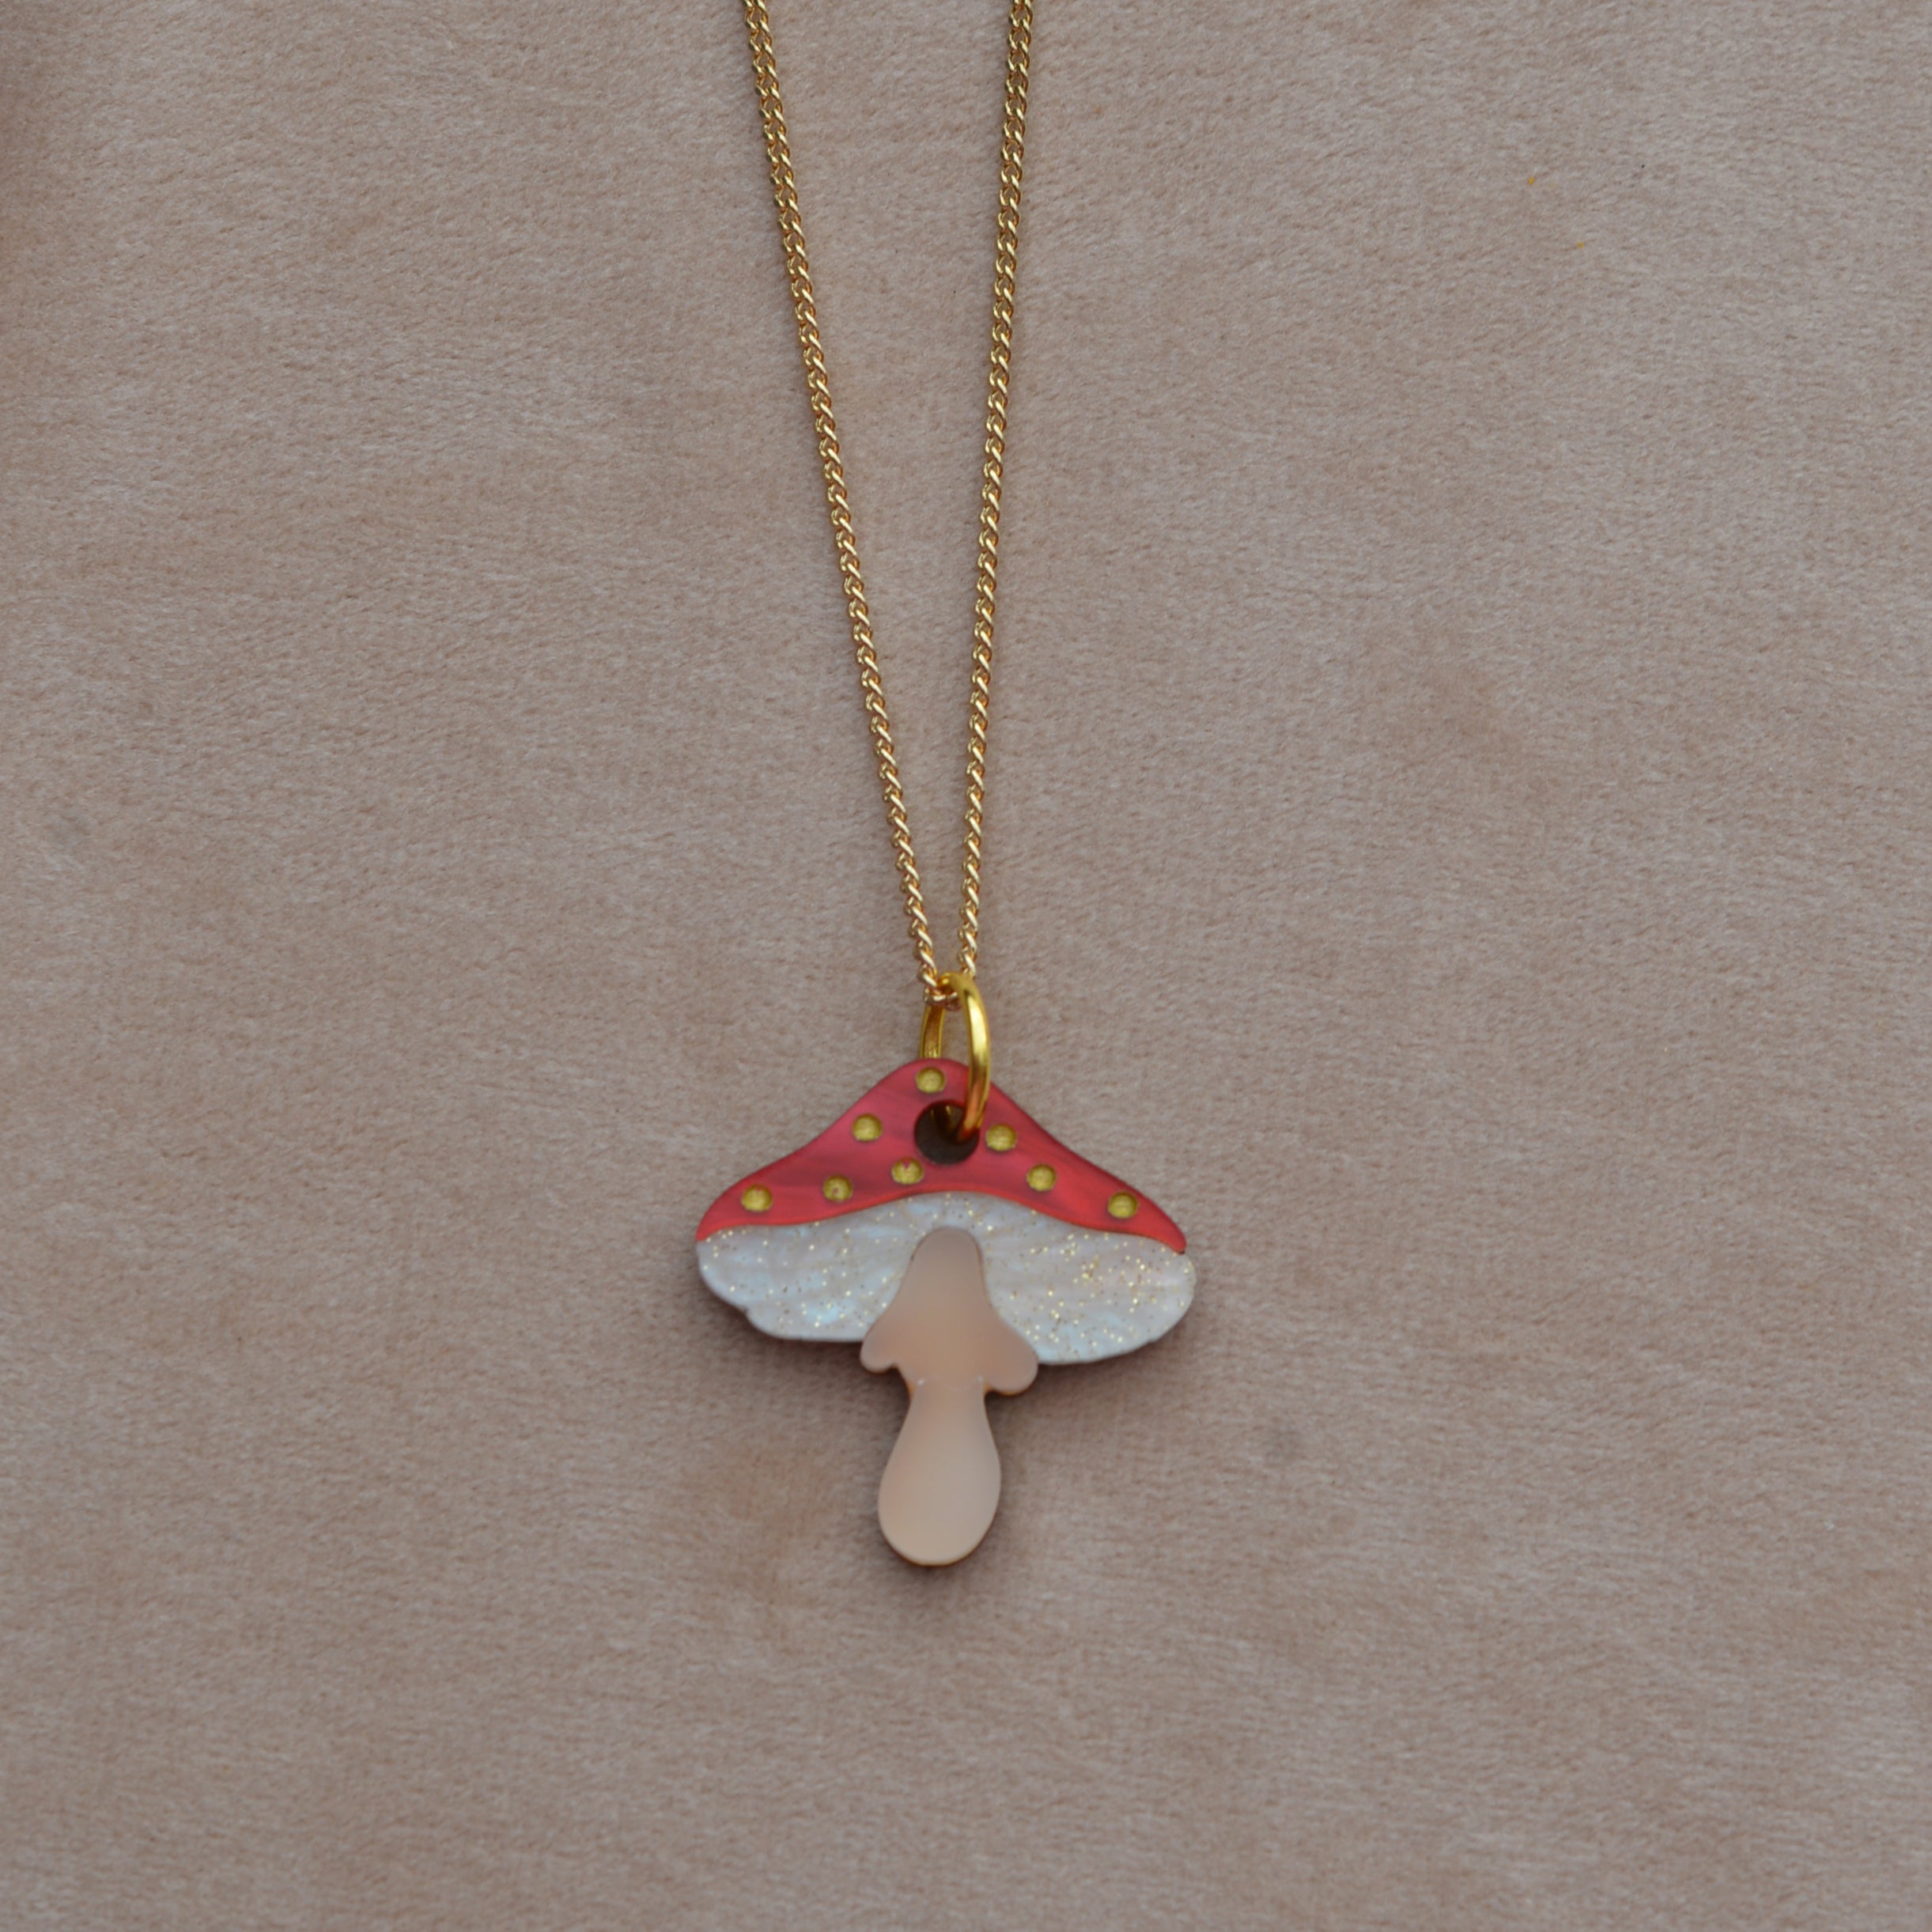 Mushroom/Toadstool Necklace